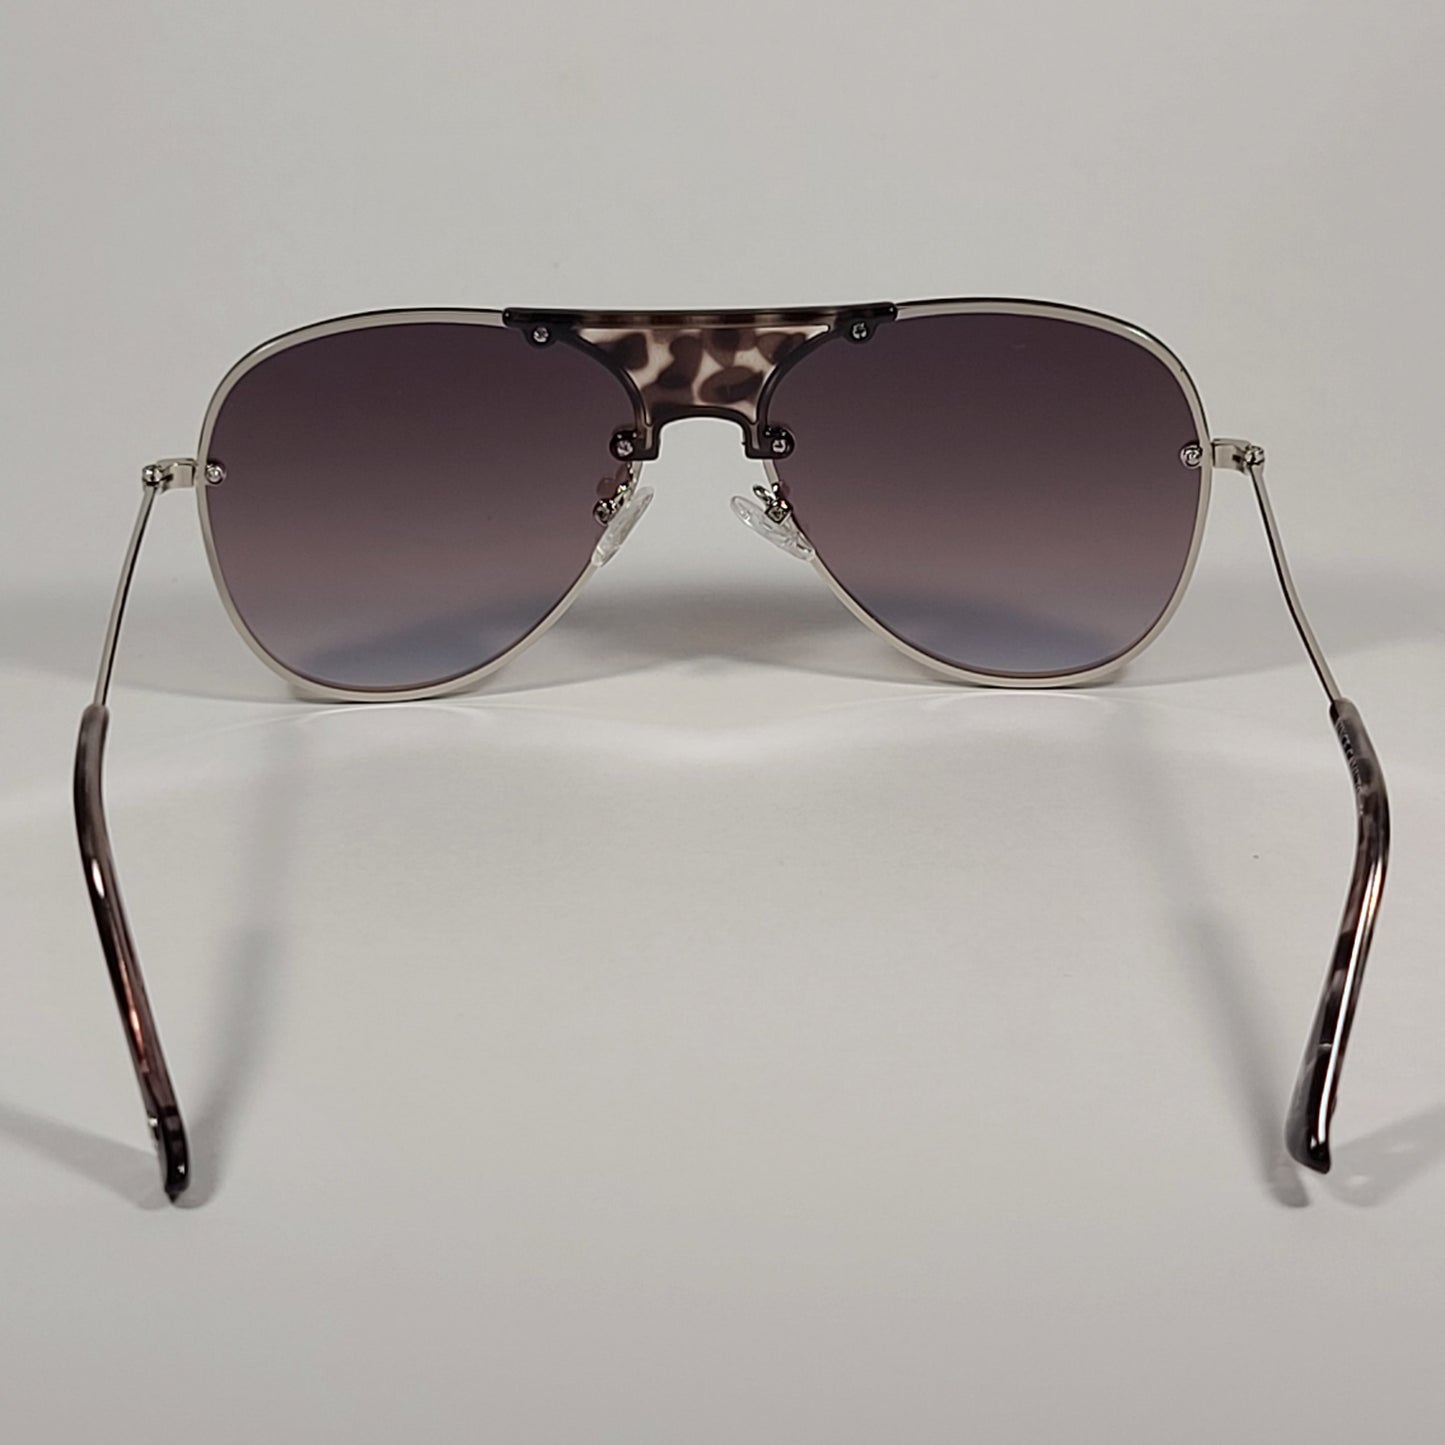 Vince Camuto Rimless Aviator Sunglasses Silver Frame Blue Mirror Lens VC831 SLV - Sunglasses